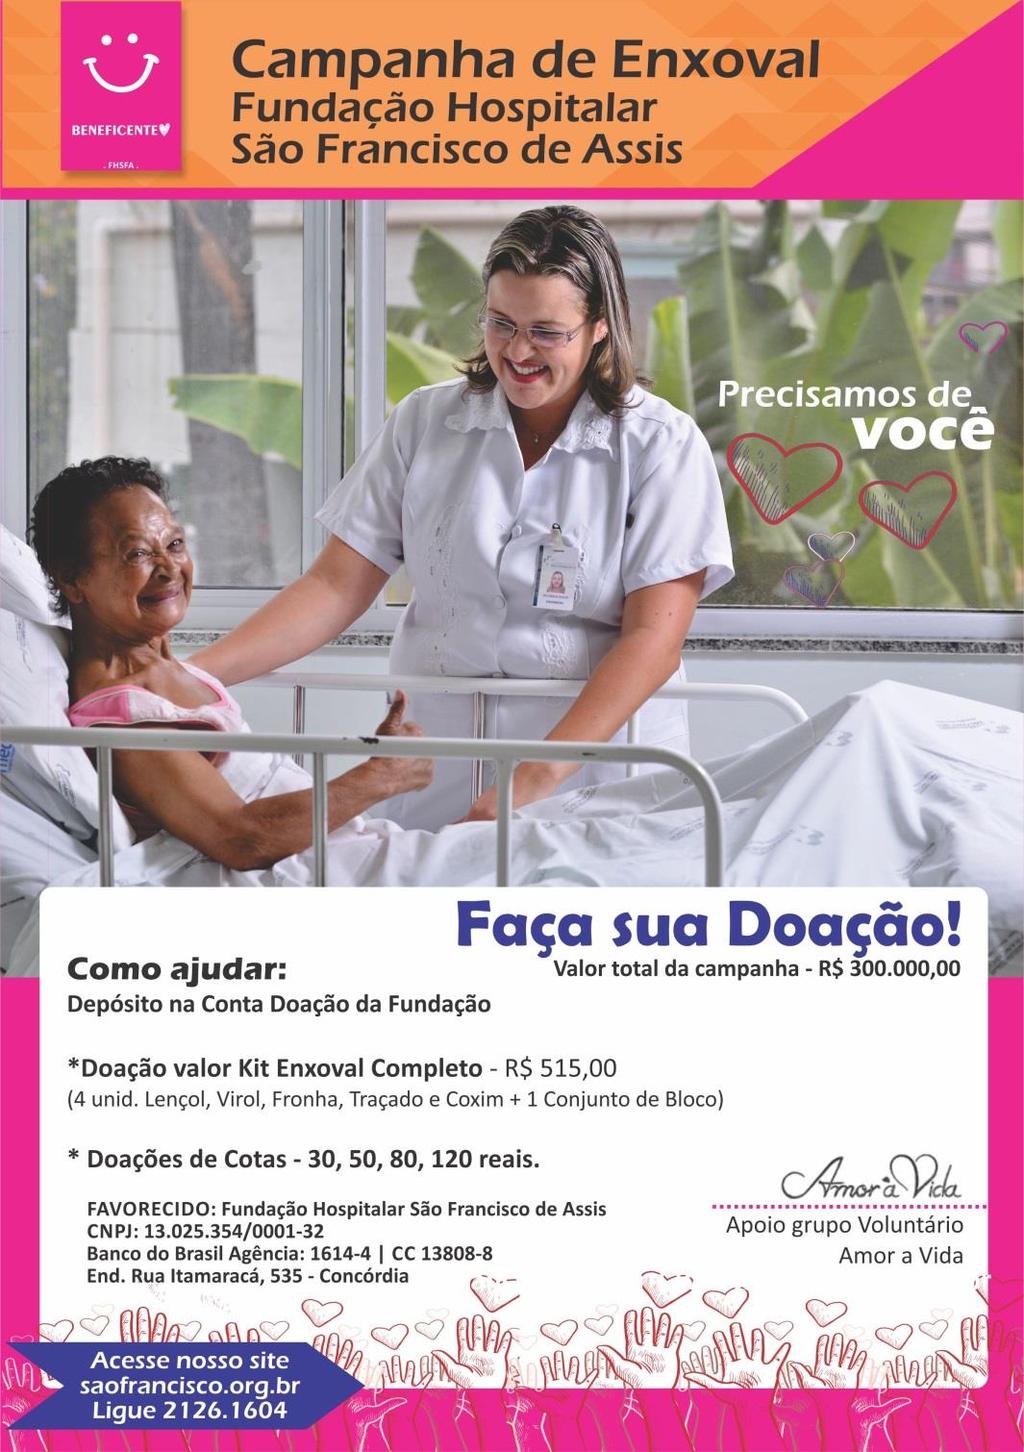 O Complexo Hospitalar São Francisco se uniu novamente ao grupo de voluntários AMOR A VIDA para lançar a Campanha de Enxoval!